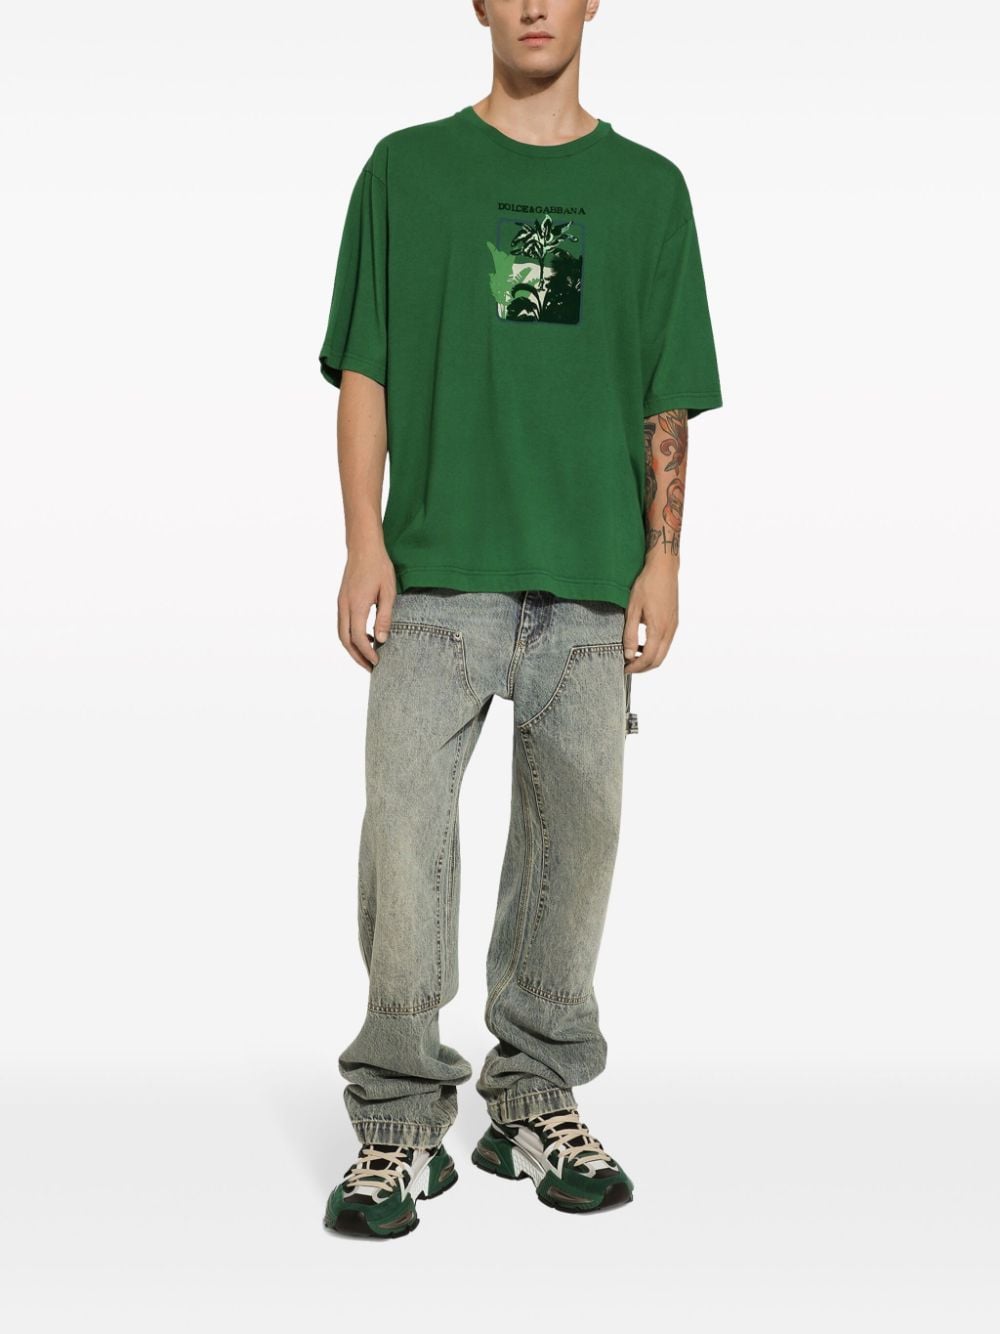 Dolce & Gabbana T-shirt met palmboomprint - Groen